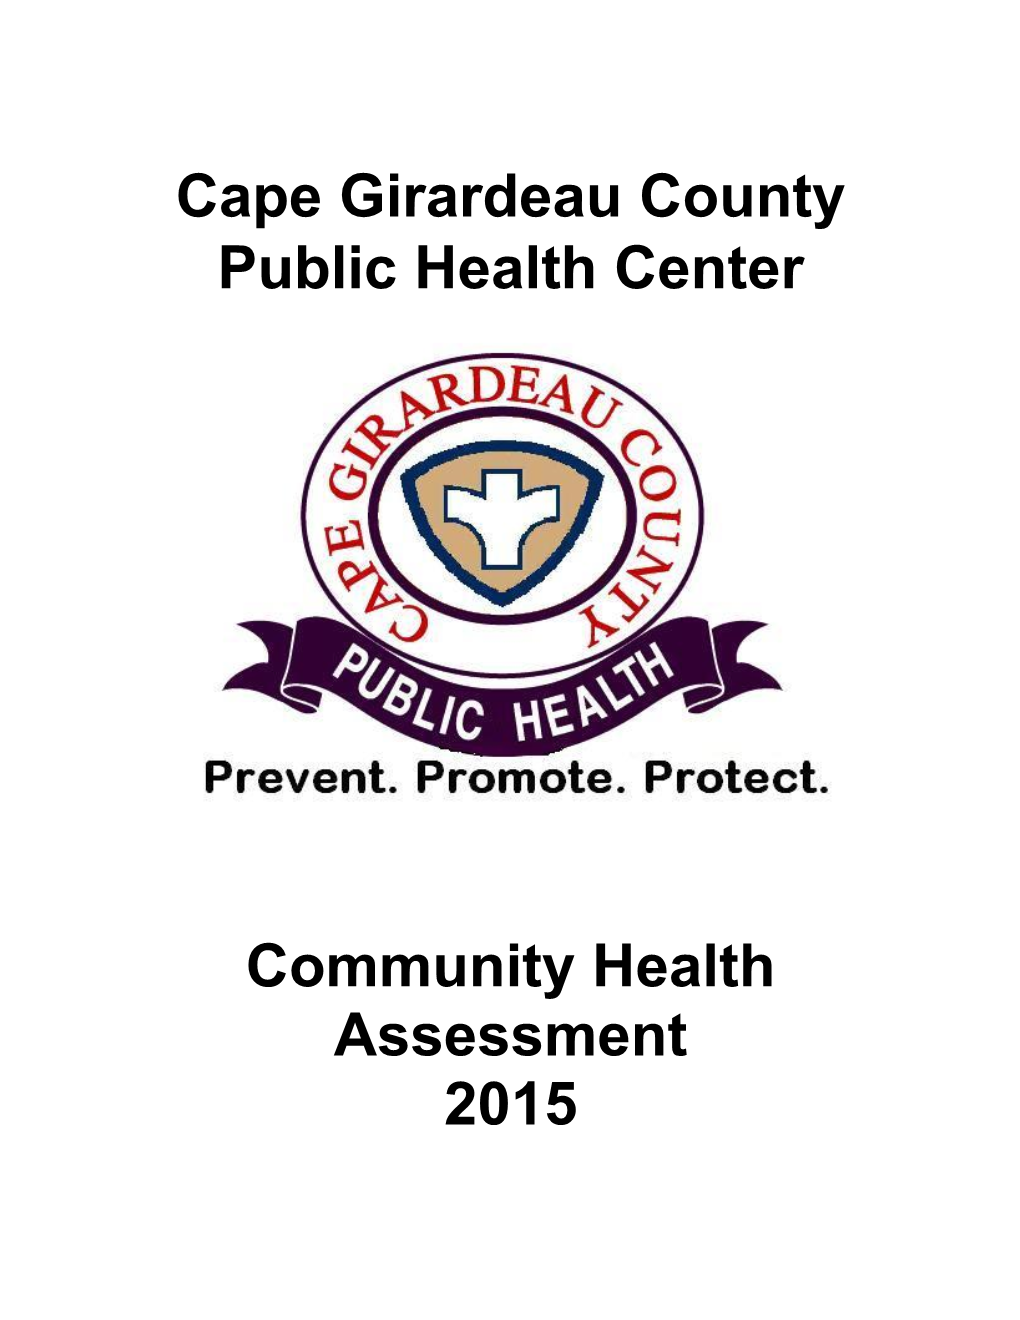 Cape Girardeau County Public Health Center Community Health